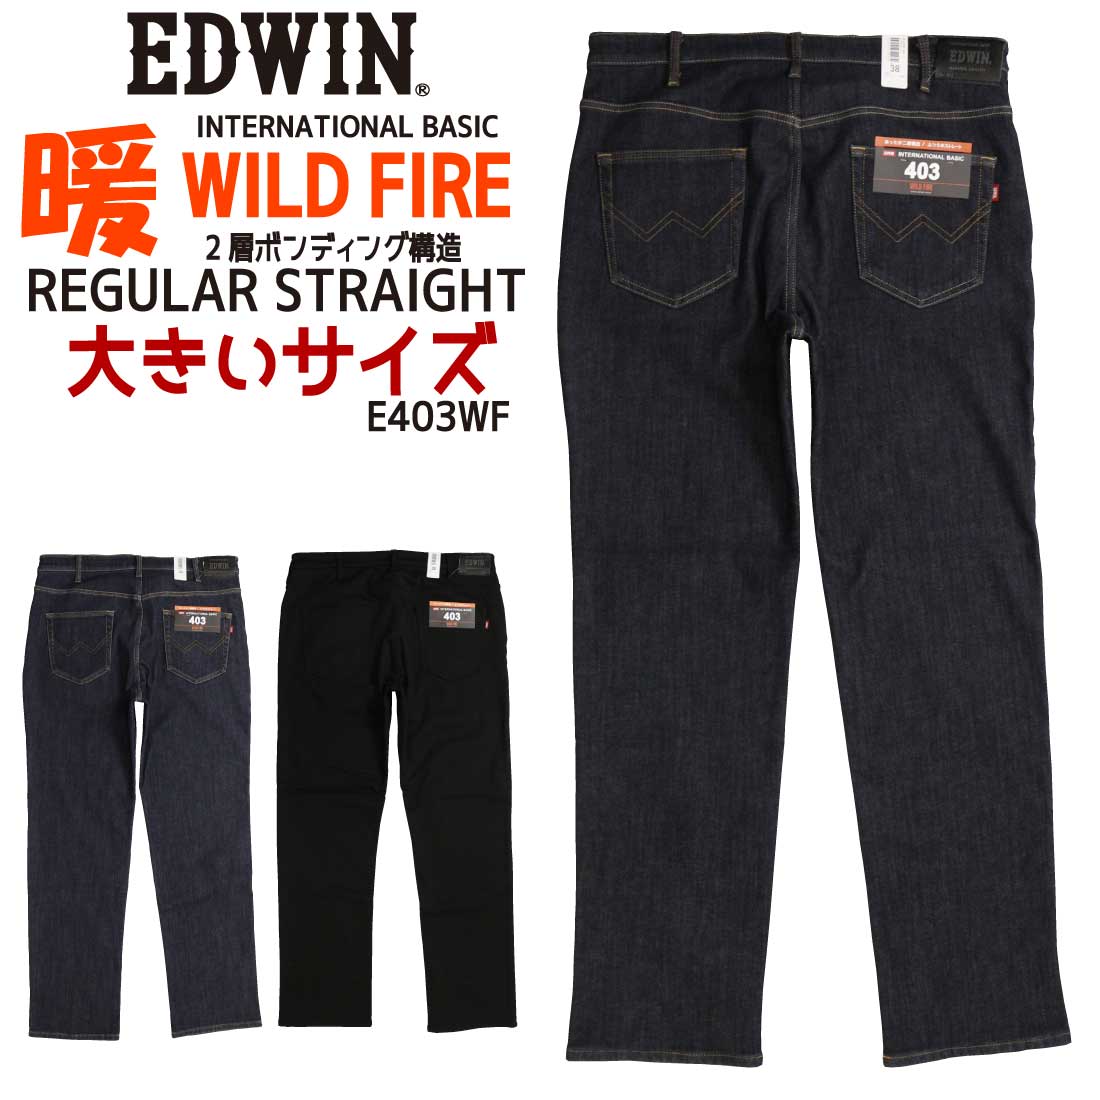 大きいサイズ エドウィン EDWIN WILD FIRE 暖パン ジーンズ 403 あったか 二層構造 E403WF ふつうのストレート 股上深め メンズ 秋冬 メンズ 定番